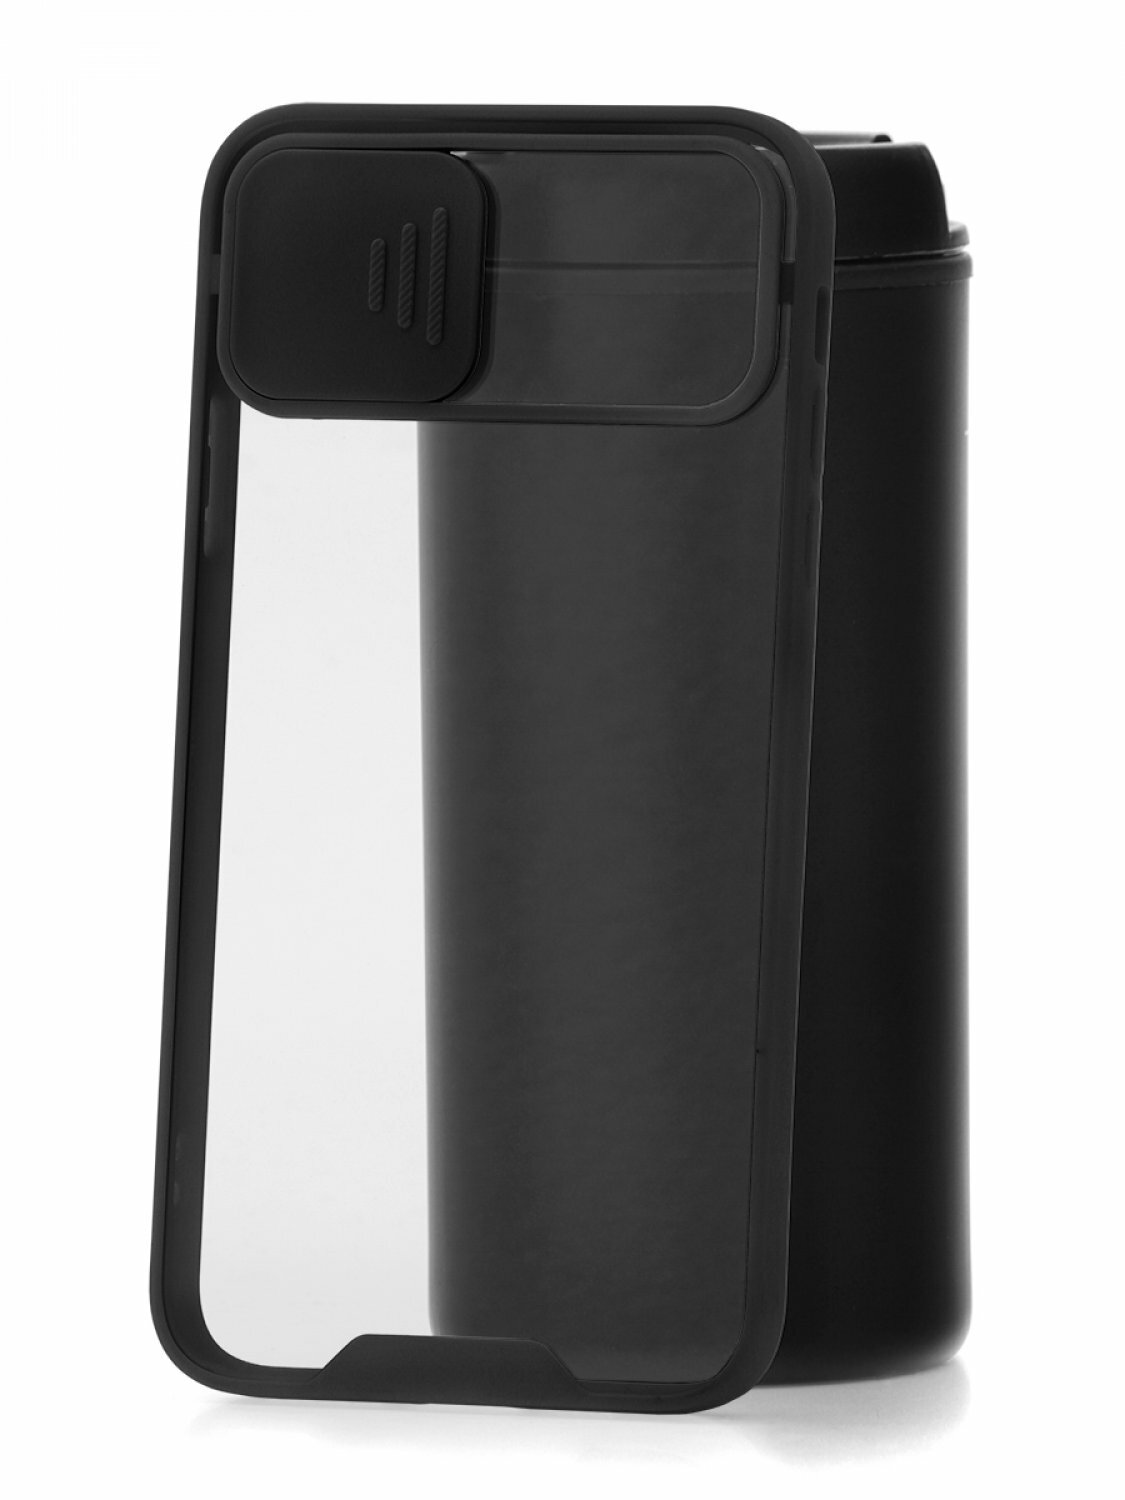 Чехол для iPhone 11 Pro Max Derbi Сloscam Black силиконовый бампер накладка с защитой камеры защита углов противоударный case